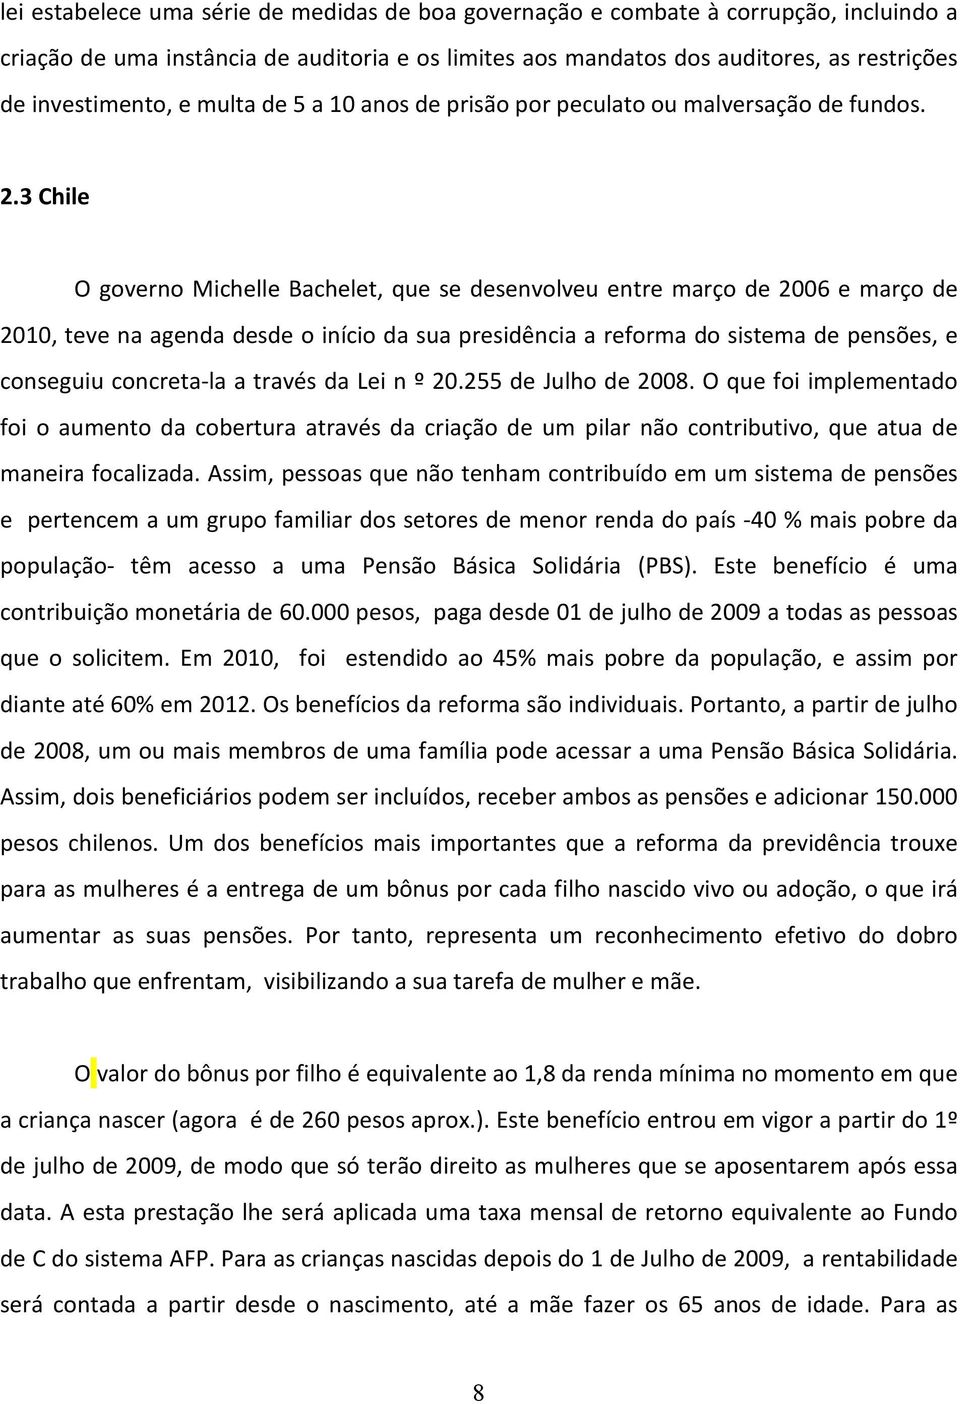 3 Chile O governo Michelle Bachelet, que se desenvolveu entre março de 2006 e março de 2010, teve na agenda desde o início da sua presidência a reforma do sistema de pensões, e conseguiu concreta-la